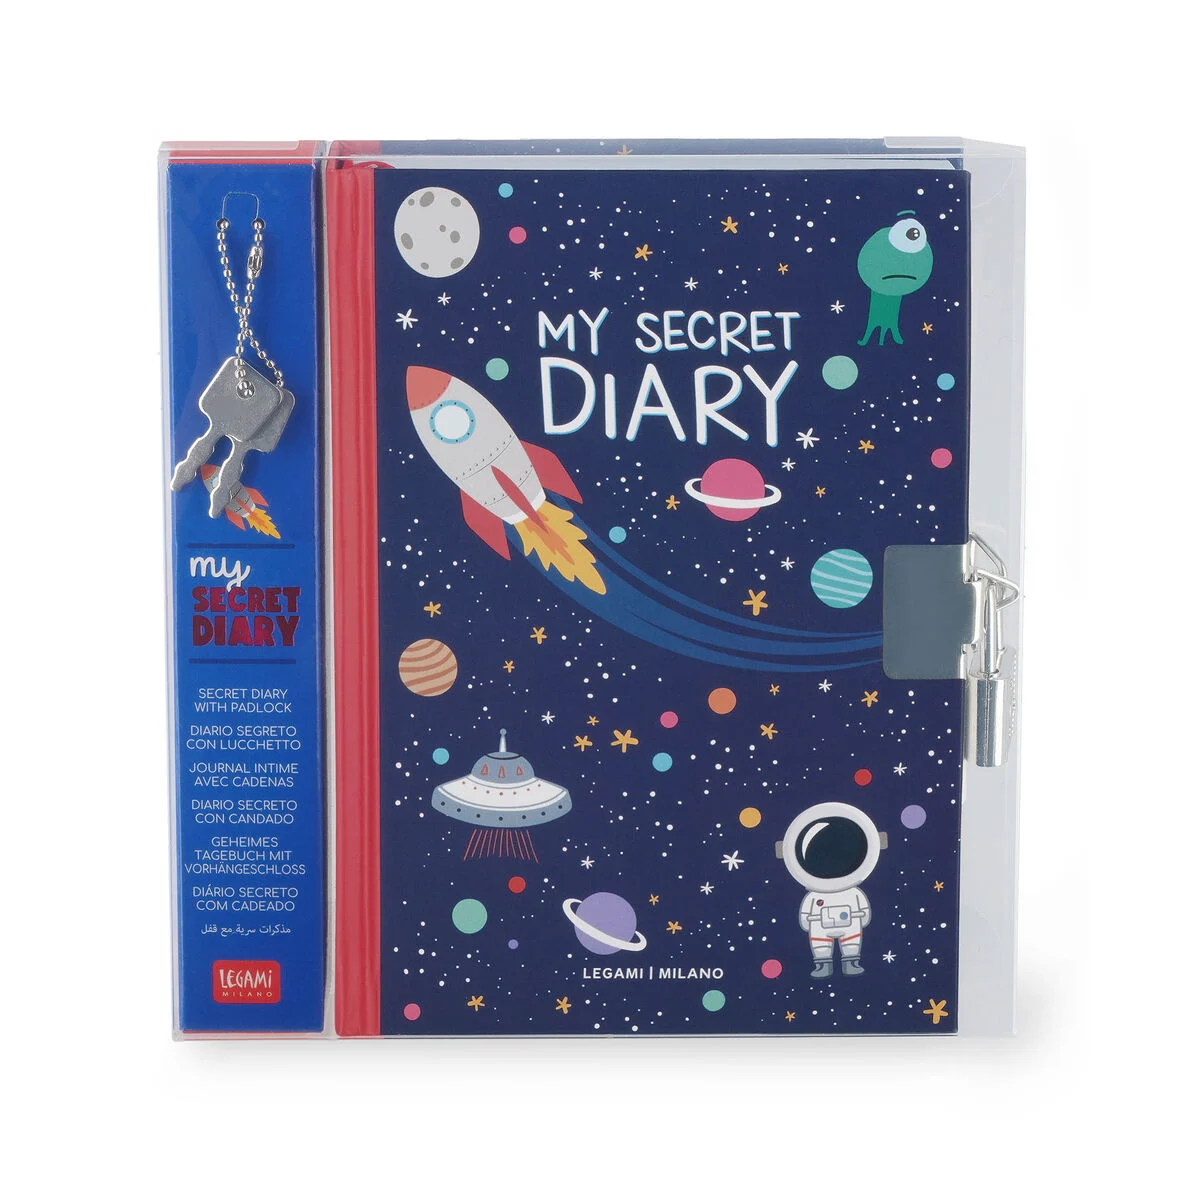 LEGAMI MILANO Diario Segreto con Lucchetto - My Secret Diary Space